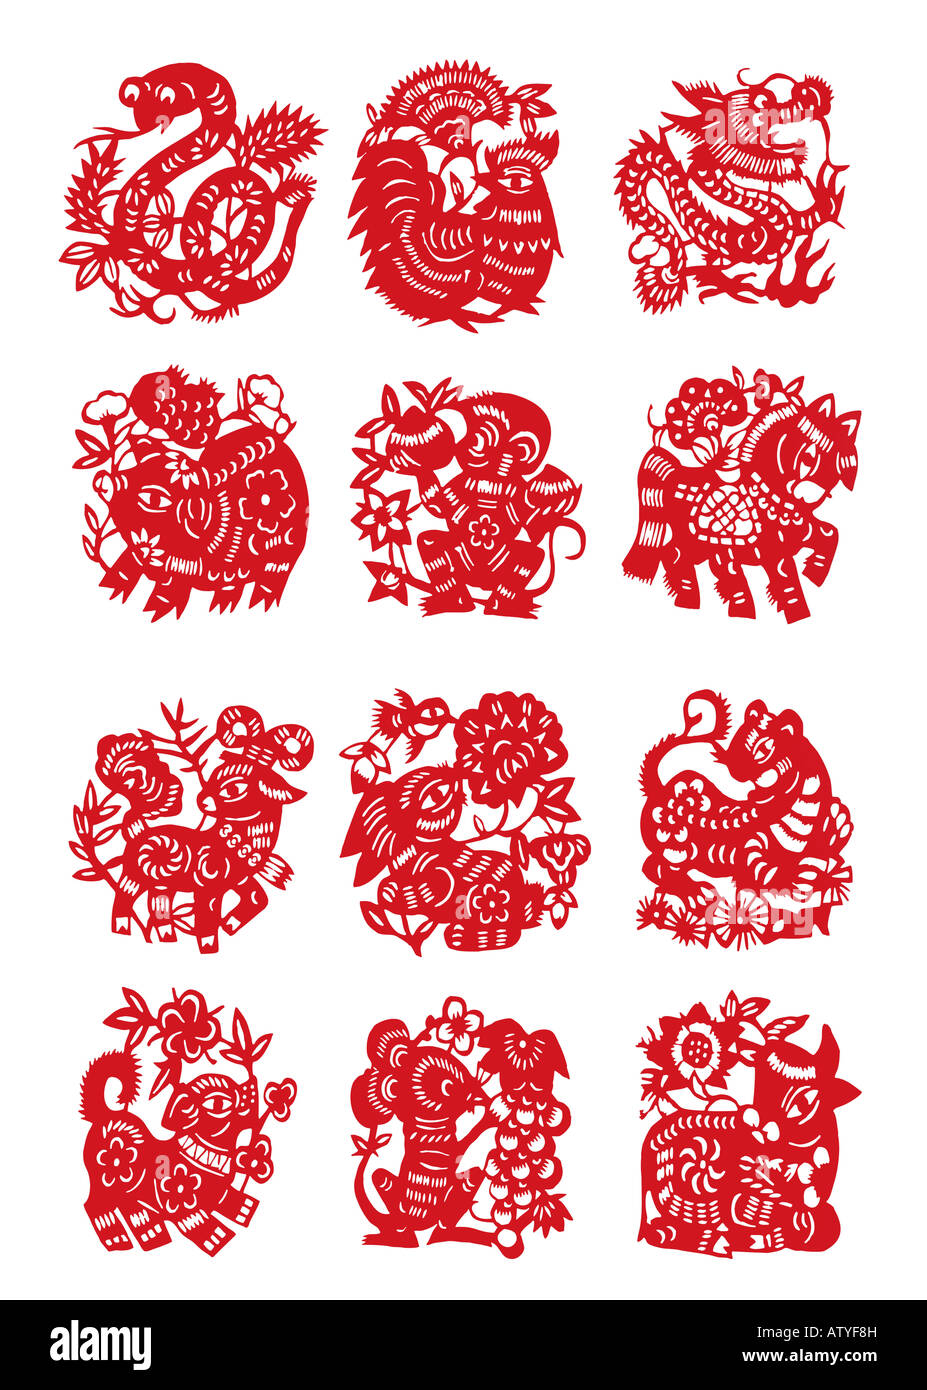 Taglio della carta cinese dodici segno animale suino di serpente di capra coak cane scimmia ratto rabit dragon horse tiger e il bestiame con tracciato di ritaglio Foto Stock